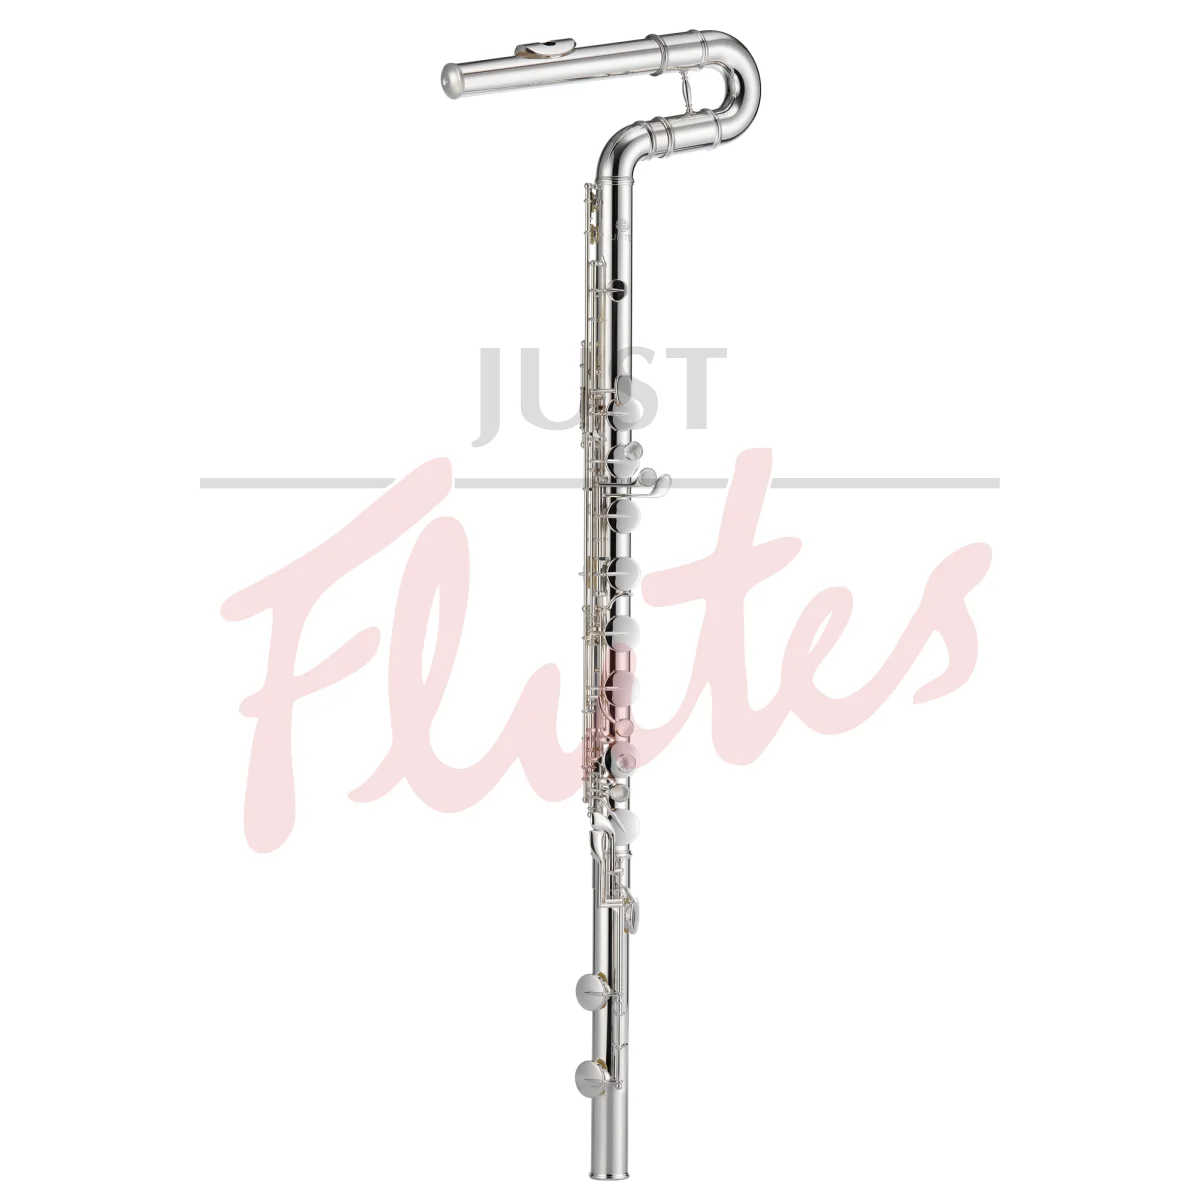 Jupiter JBF-1100E Upright Bass Flute